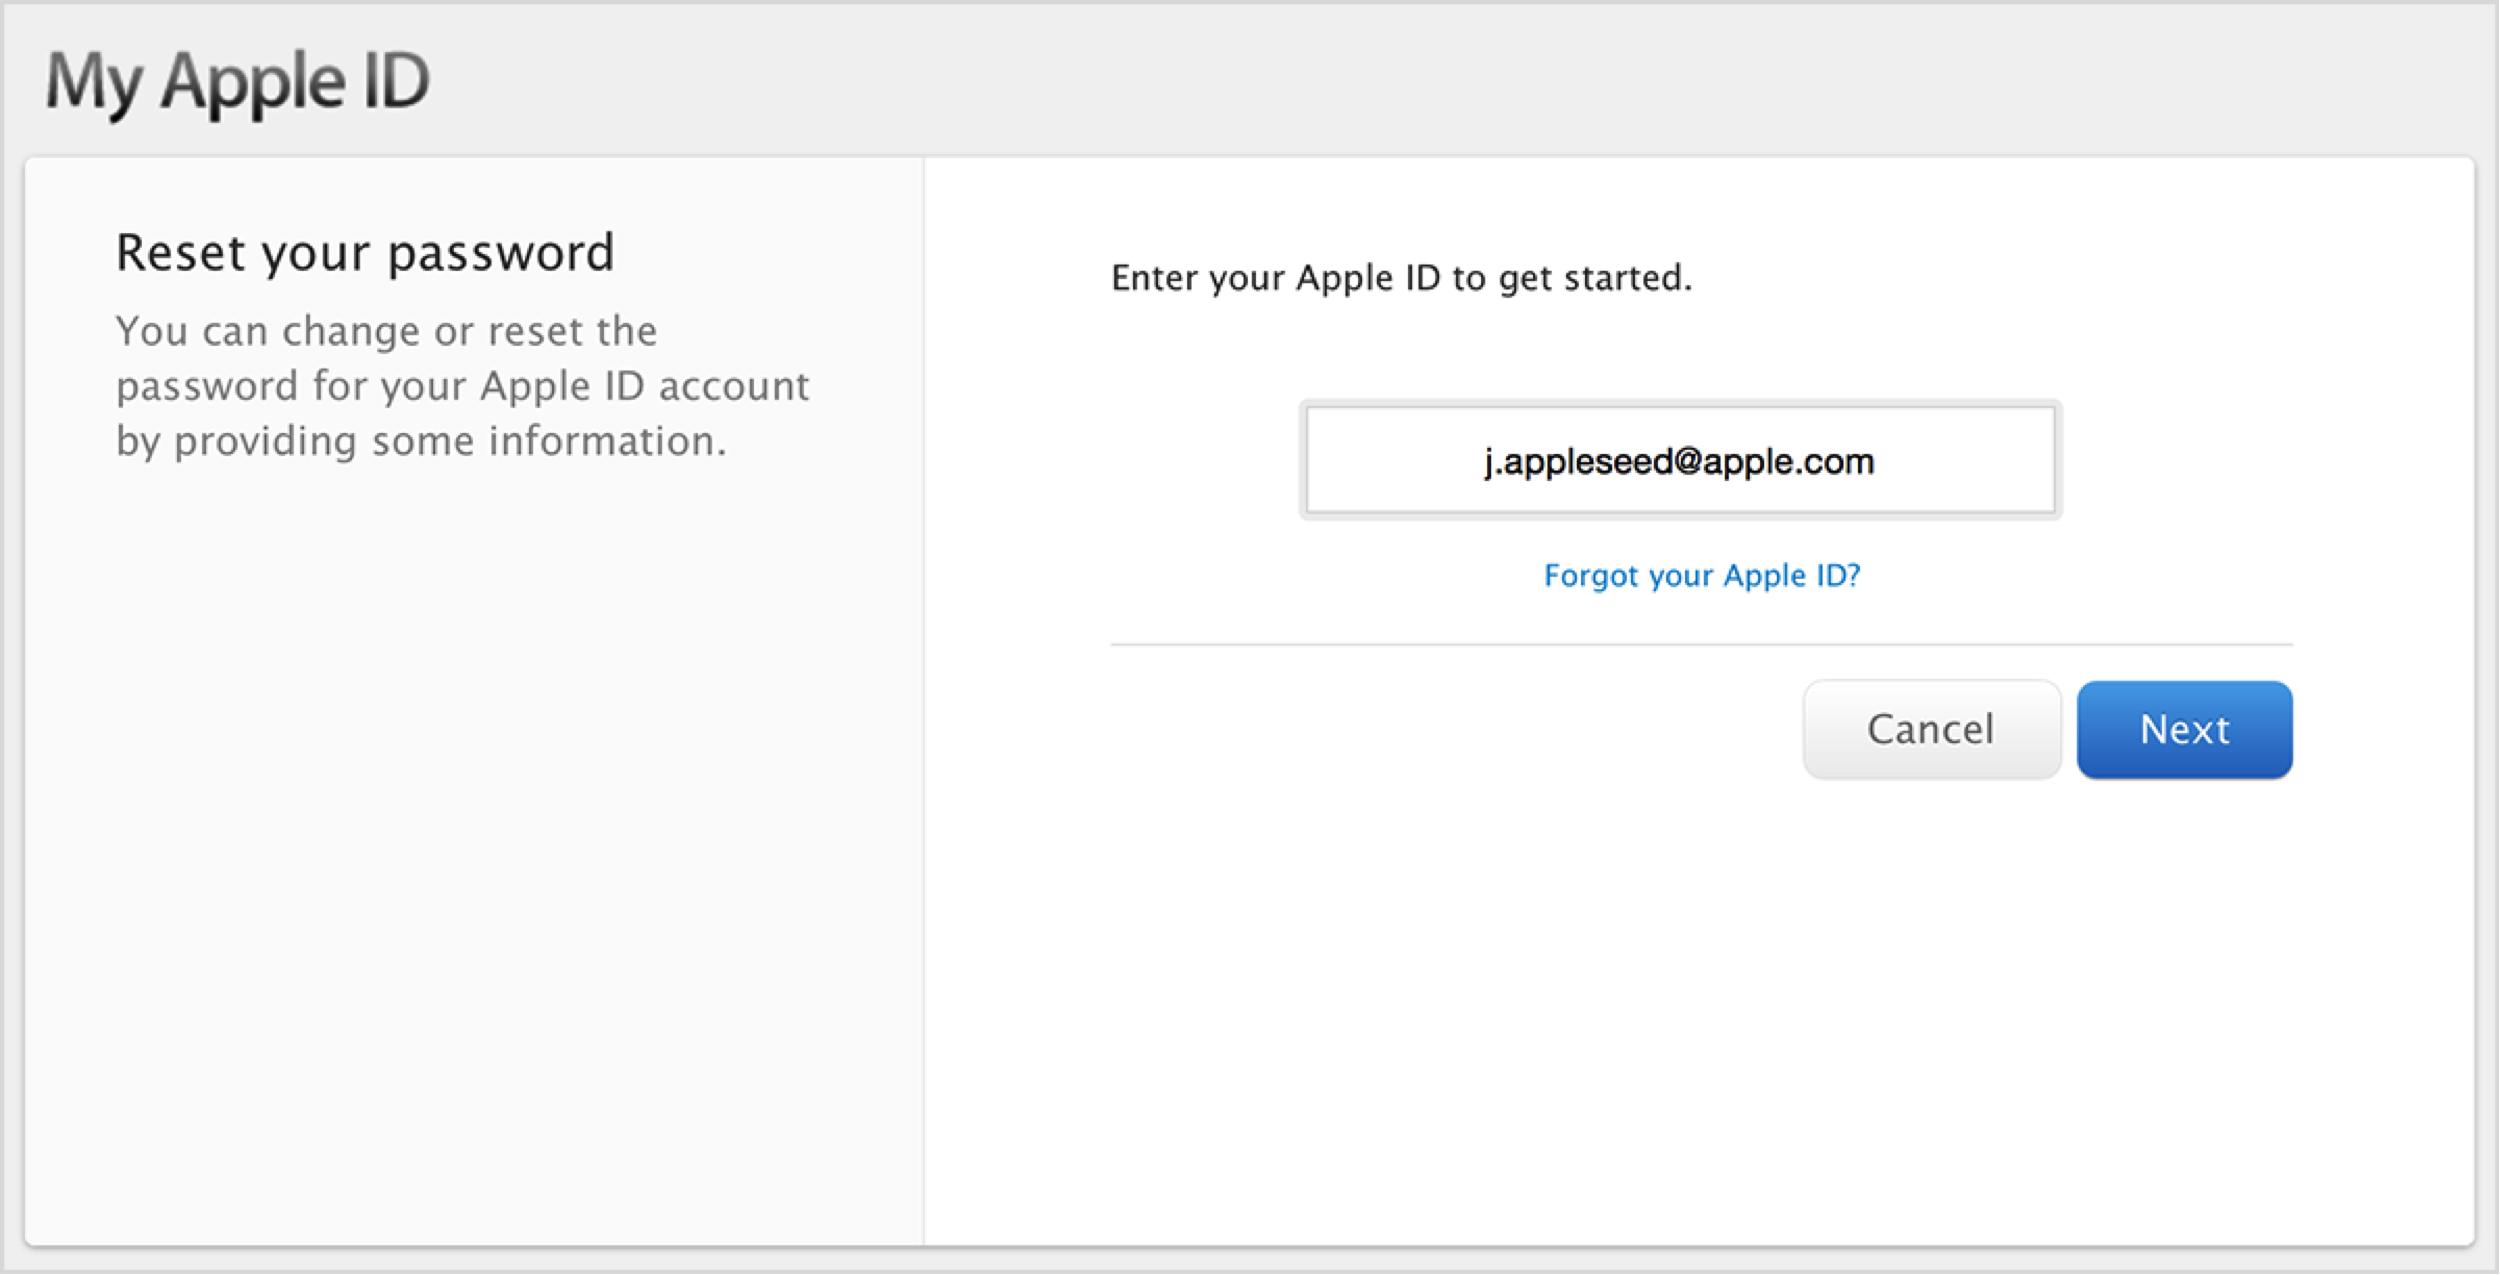 Привязка apple id. Пароль для Аппле ИД. Идентификатор Apple ID что это. Пароль для АПЛ ID. Что такое Эппл ID И пароль.